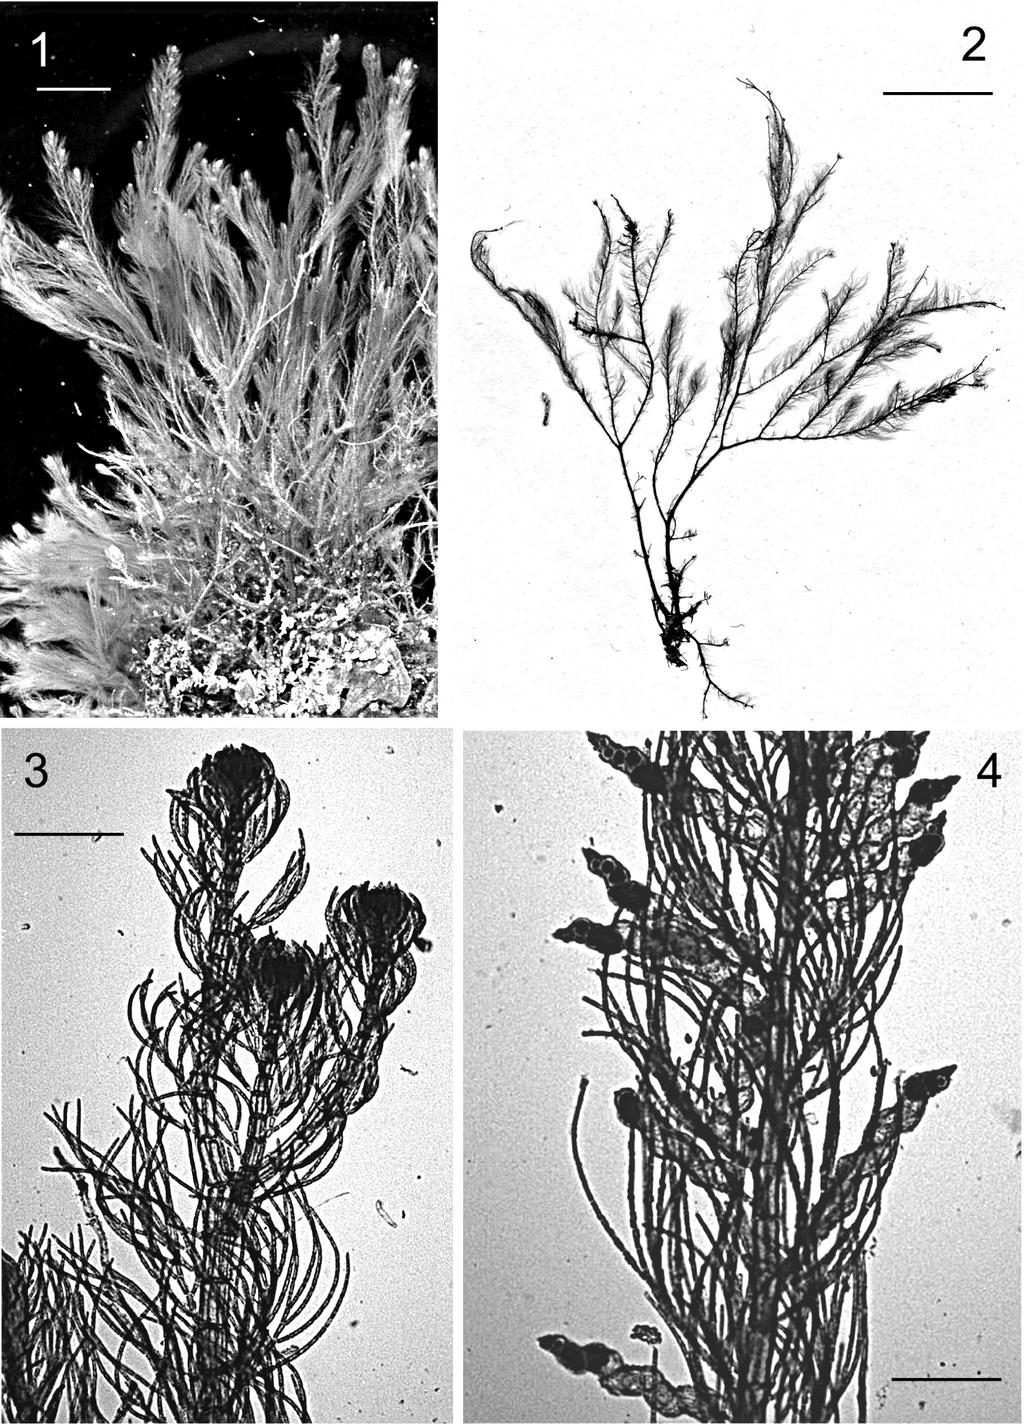 66 FIGS 1-4. Lophocladia trichoclados (Mertens ex C. Agardh) Schmitz. Fig. 1. Aspecto general del hábito en el medio natural (Escala = 5 mm). Fig. 2.